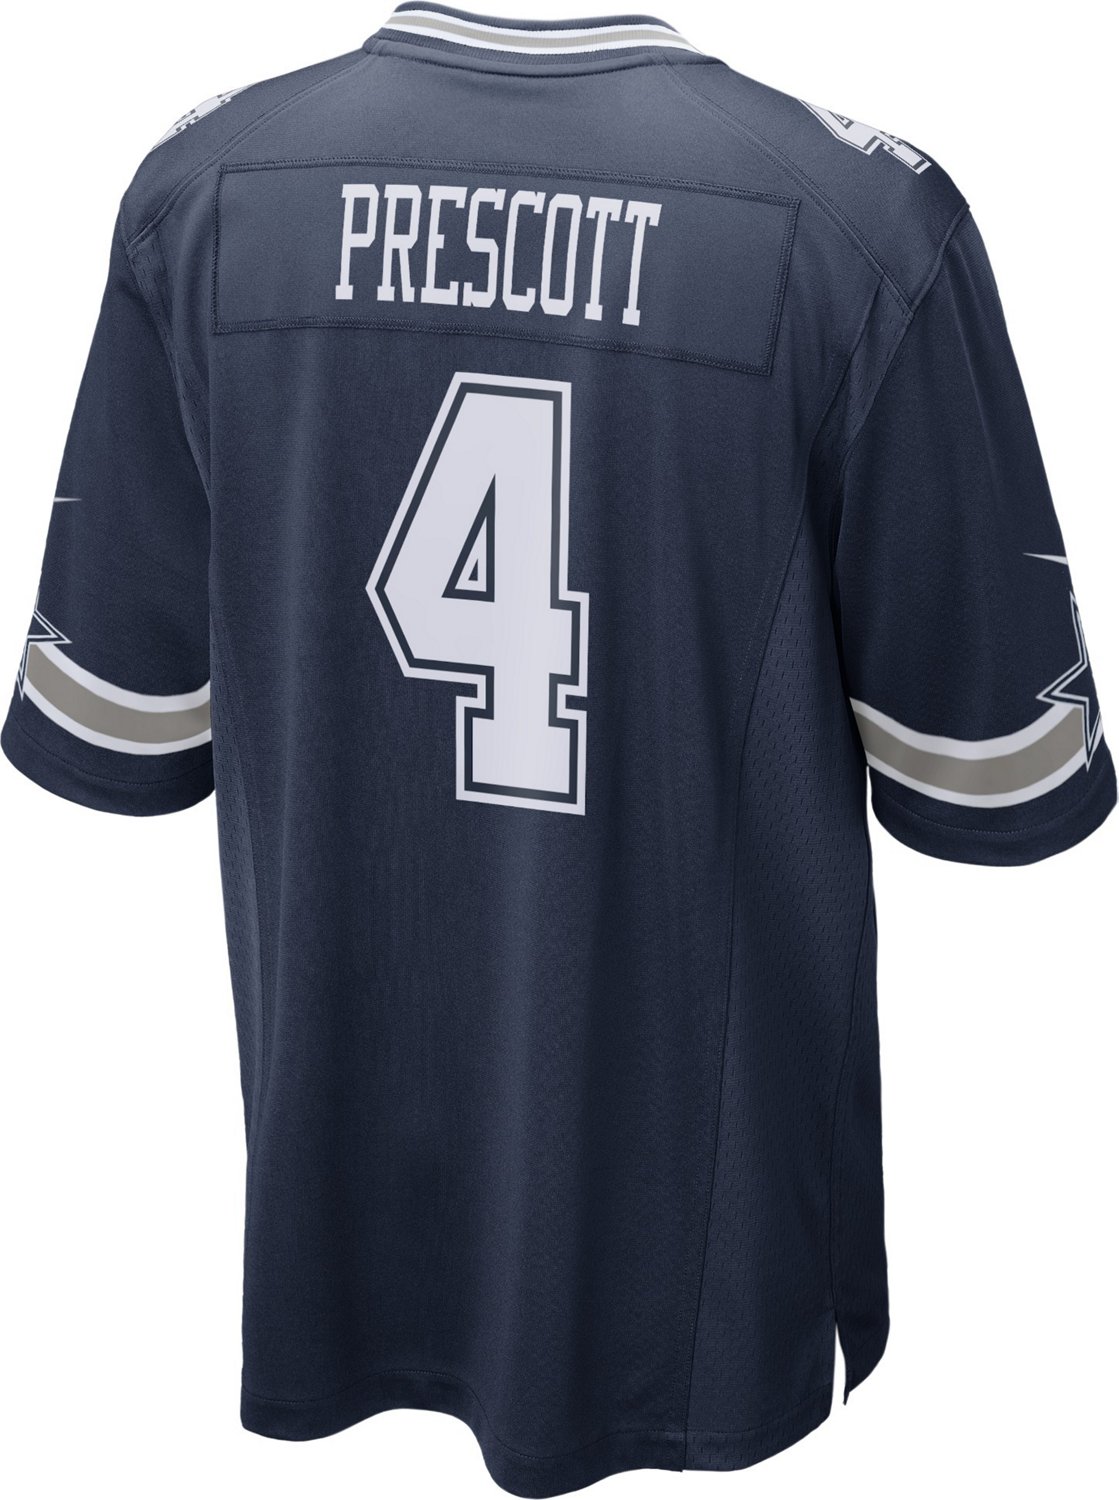 Nike Men's Dallas Cowboys Prescott Game Jersey